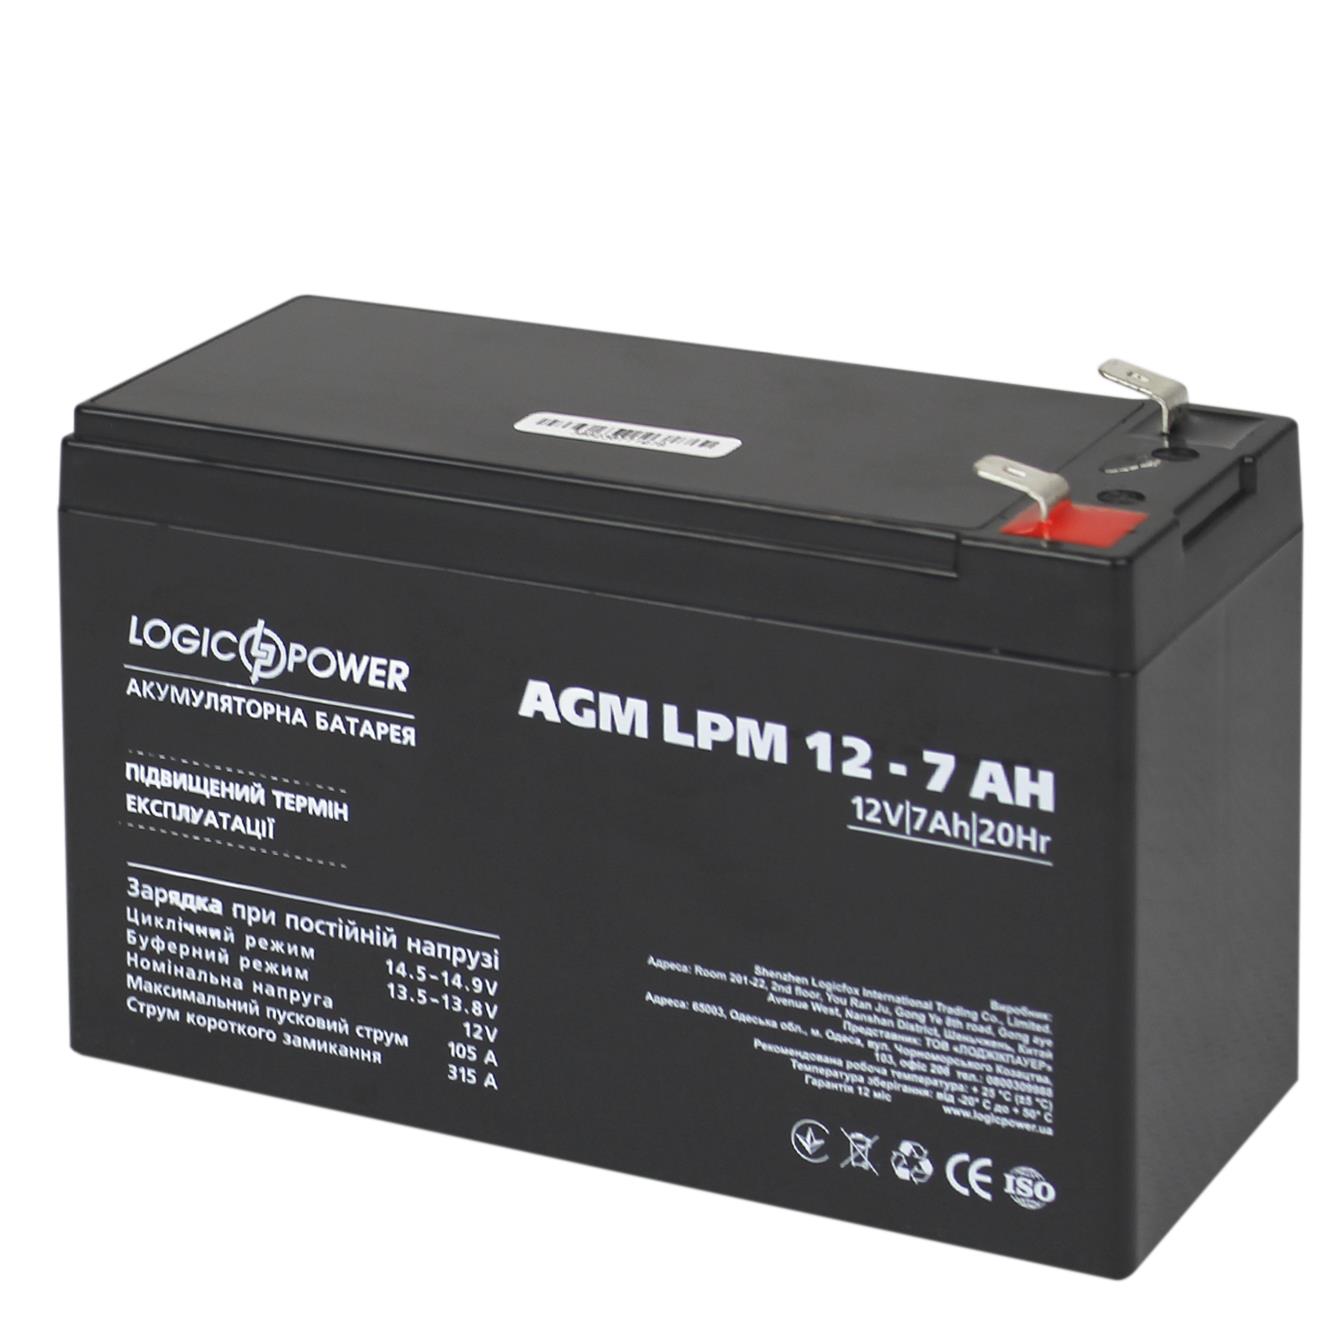 Акумулятор свинцево-кислотний LogicPower AGM LPM 12V - 7 Ah (3862)